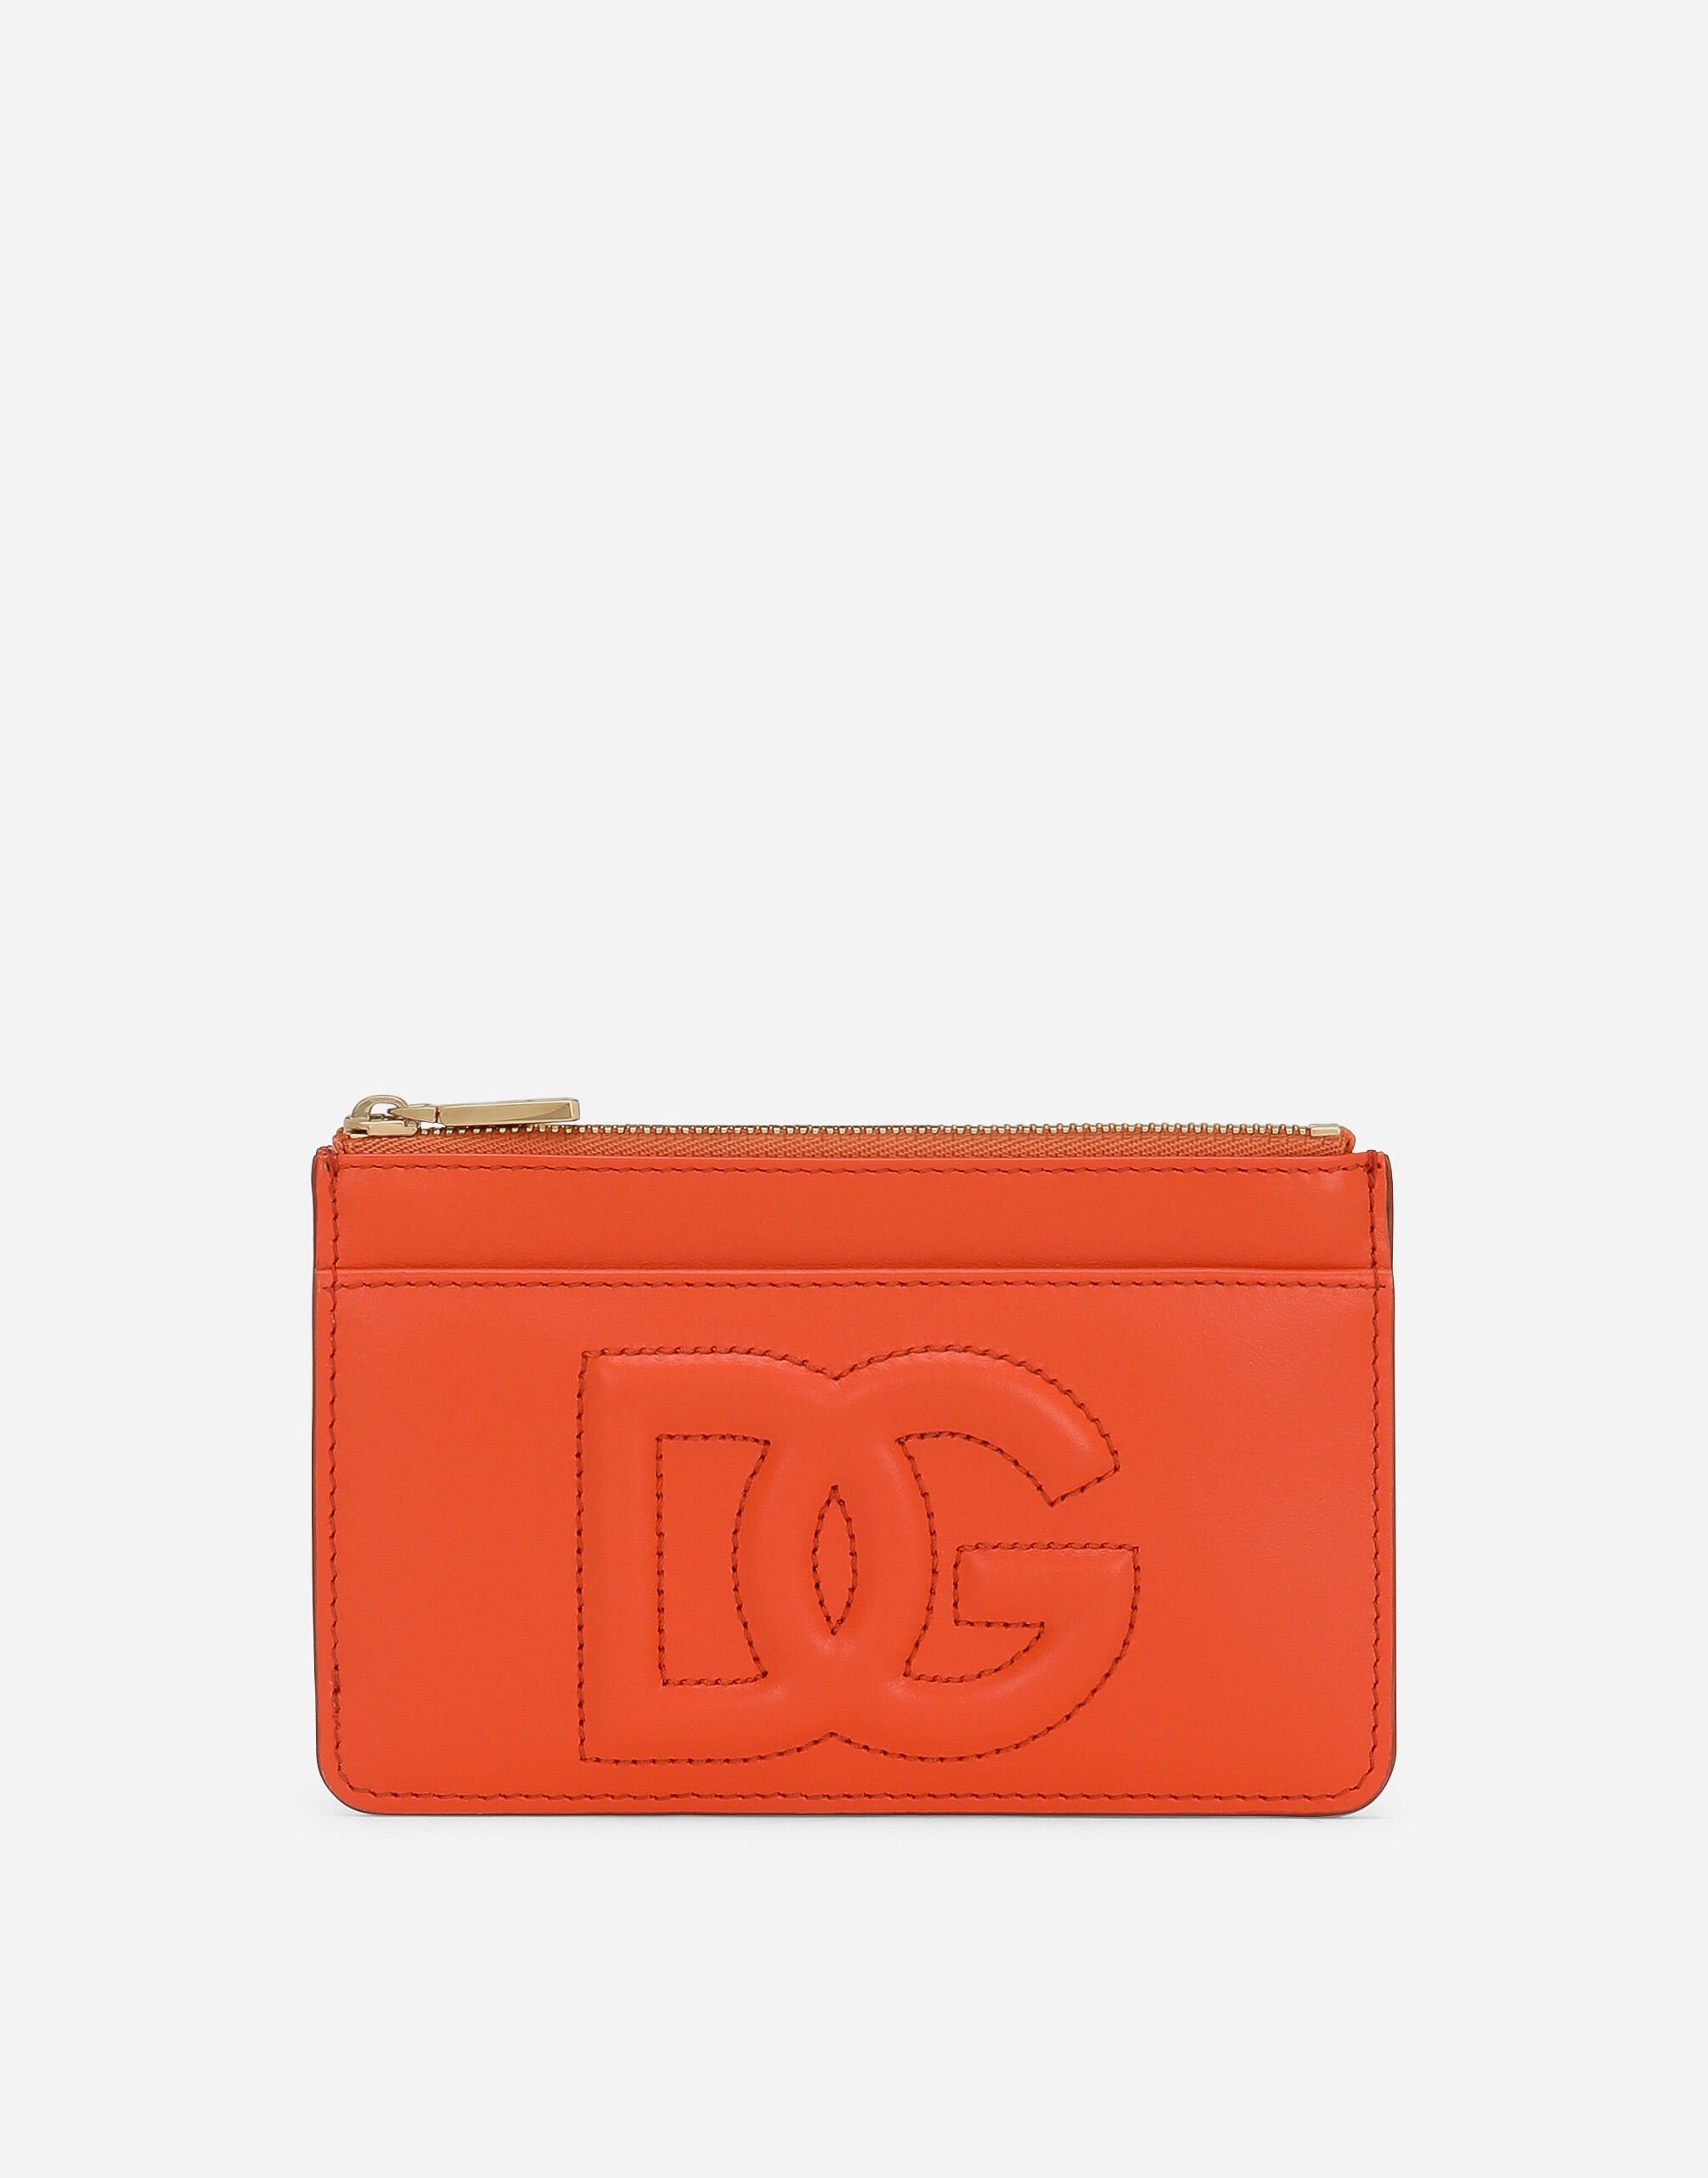 Dolce & Gabbana DG Logo カードホルダー ミディアム オレンジ BI1261AS204